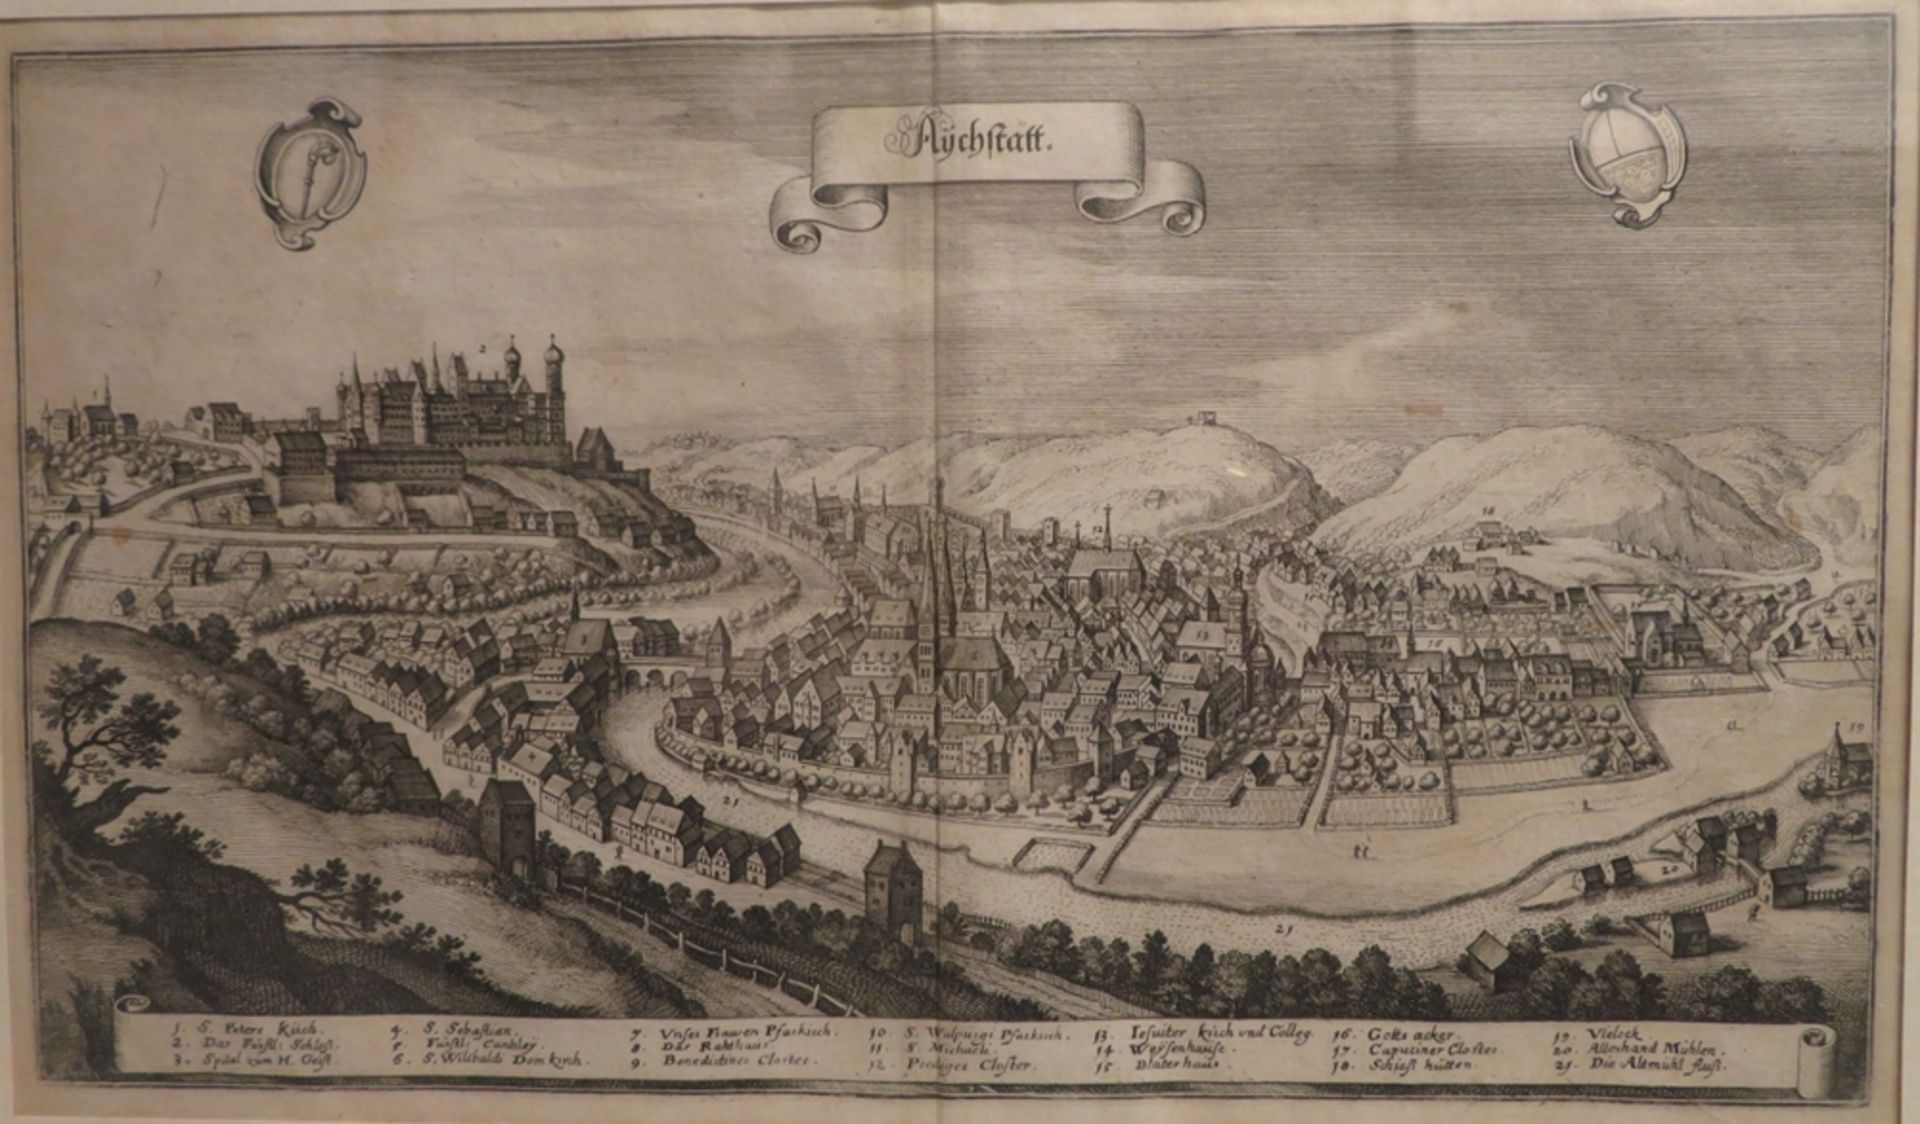 Merian, Matthäus, 1593 - 1650, Basel - Bad Schwalbach,